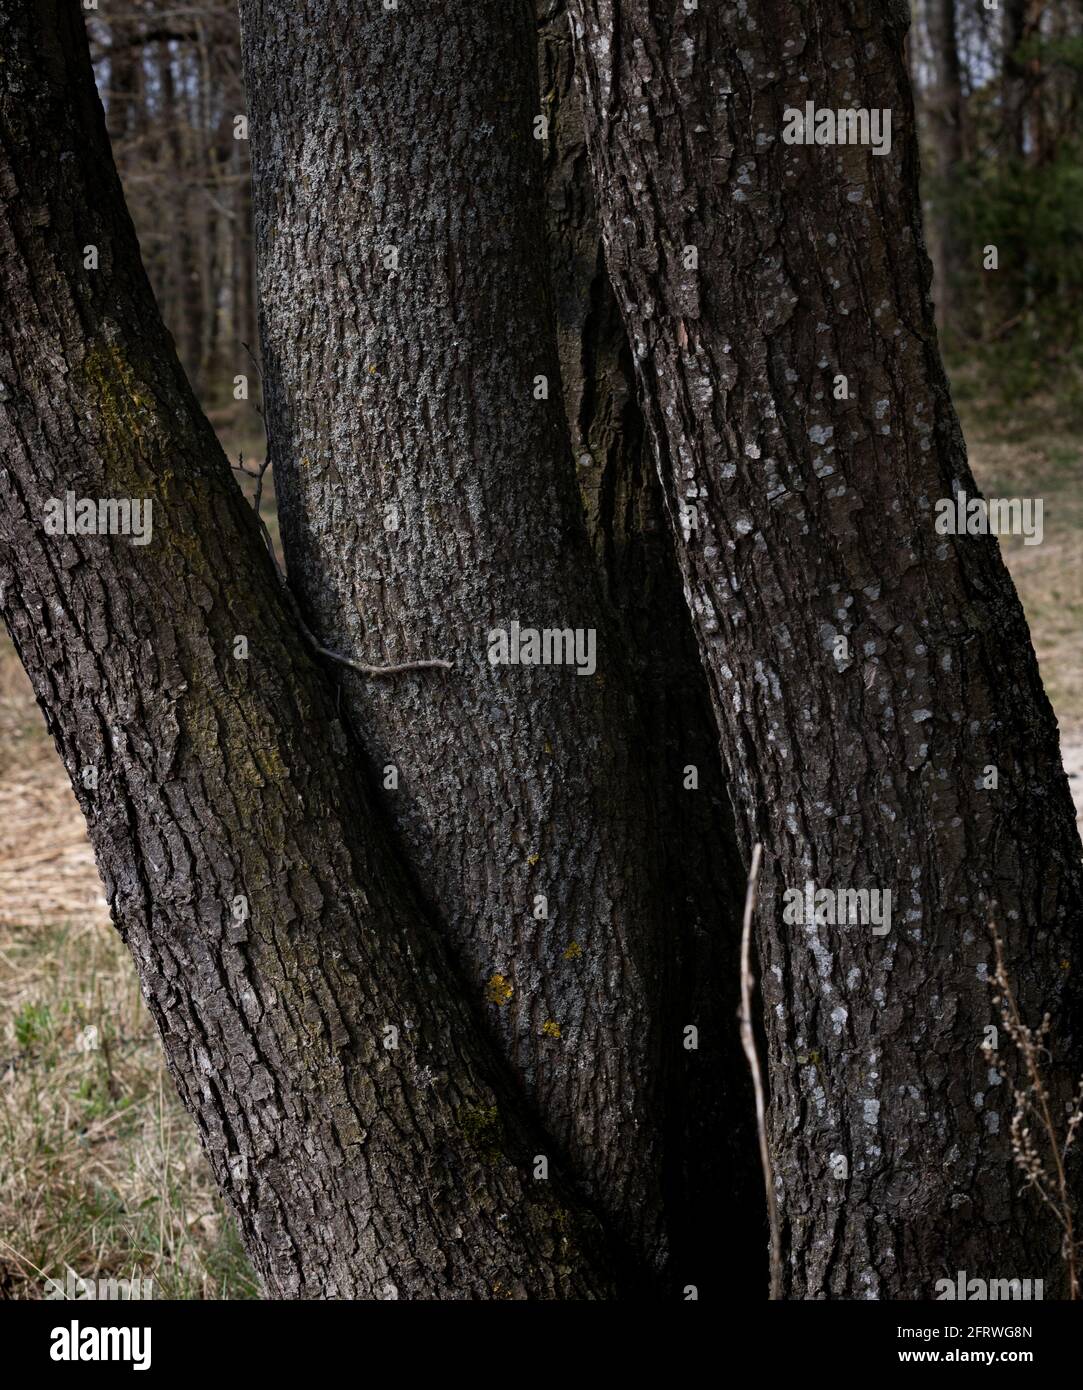 Cuatro árboles viejos en el bosque, creciendo desde una raíz, entrelazados como serpientes. Negro, verde, gris y musgo. El sol brilla en ellos. Foto de stock